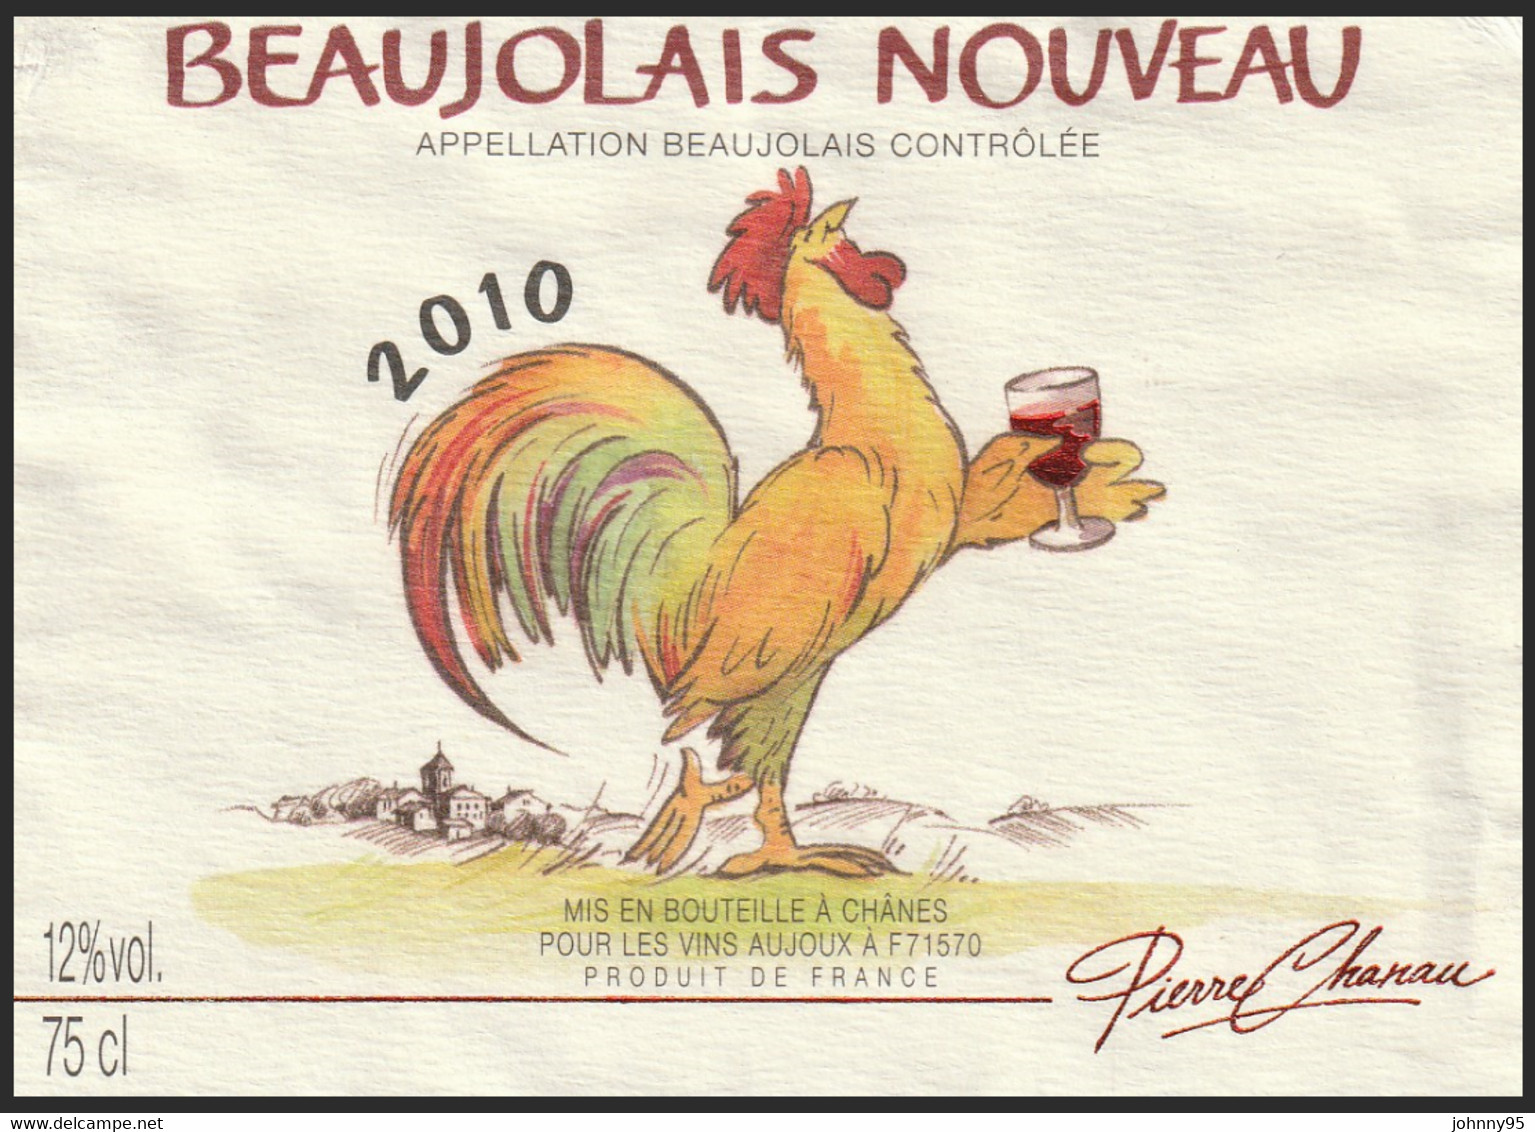 Coq Sur étiquette De Vin - Beaujolais Nouveau 2010 Pierre Chanau - Vins Aujoux : Chânes Saône Et Loire - Coqs